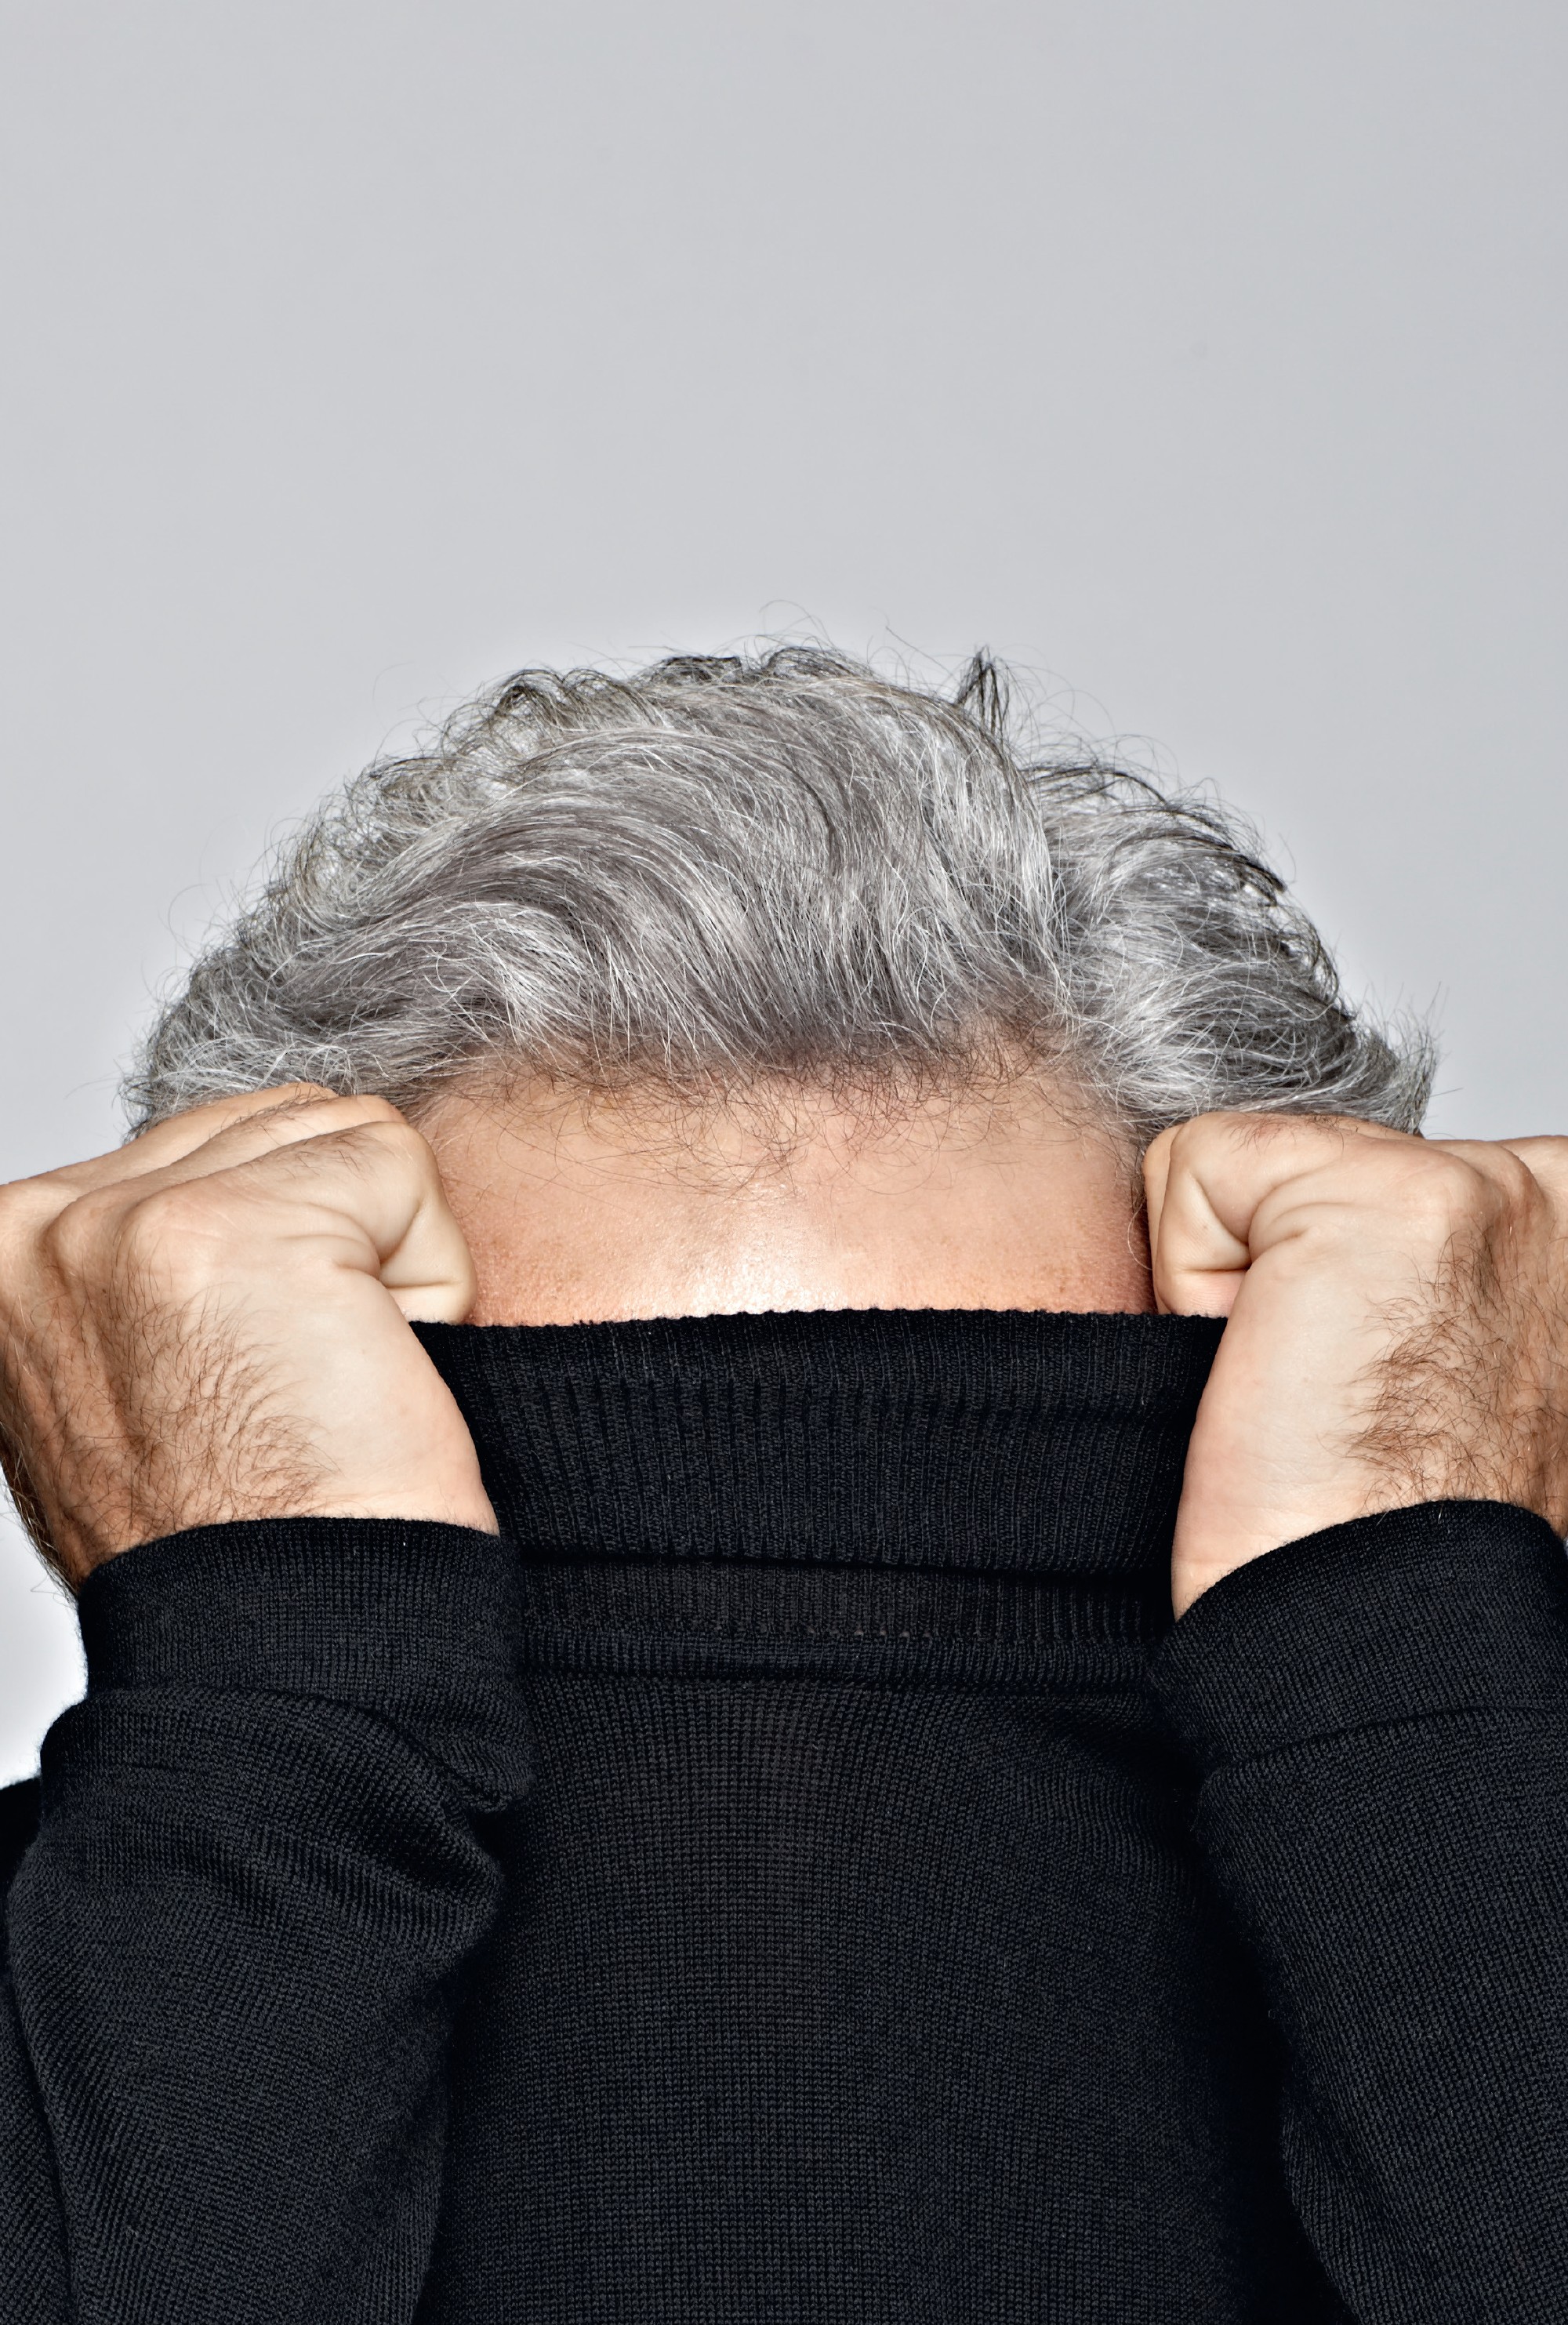 50 tons de cinza: “Pessoas que enfrentam períodos contínuos de estresse e ansiedade podem ter cabelos grisalhos antes do previsto” (Foto: Getty Images)